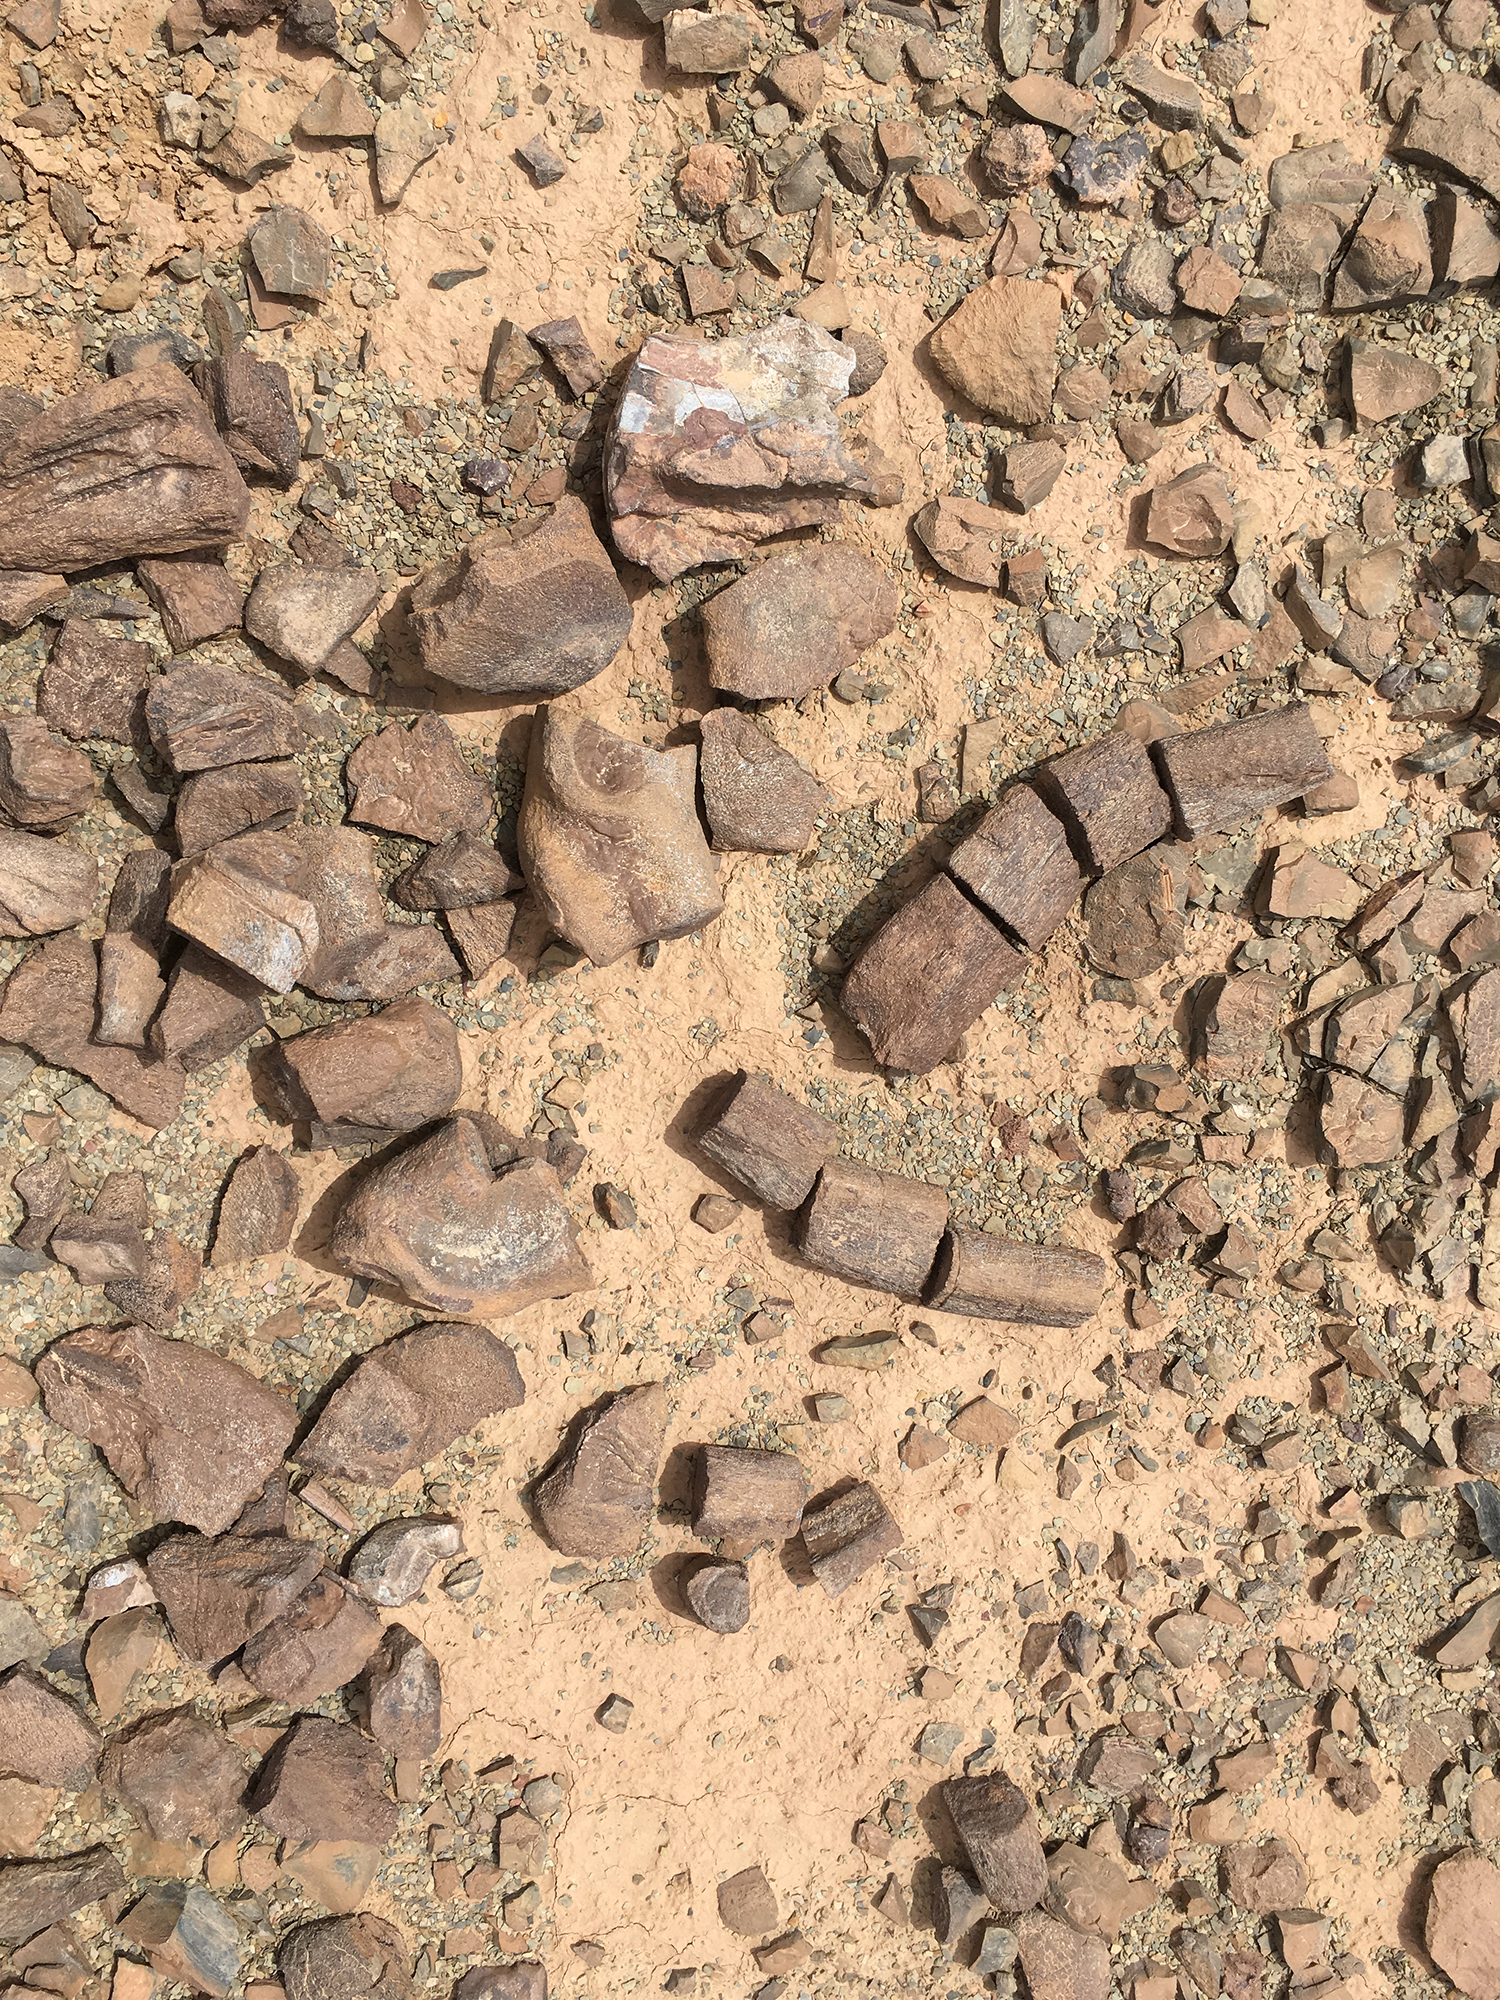 In der Studie verwendete Fossilien, wie sie in Marokko gefunden wurden.